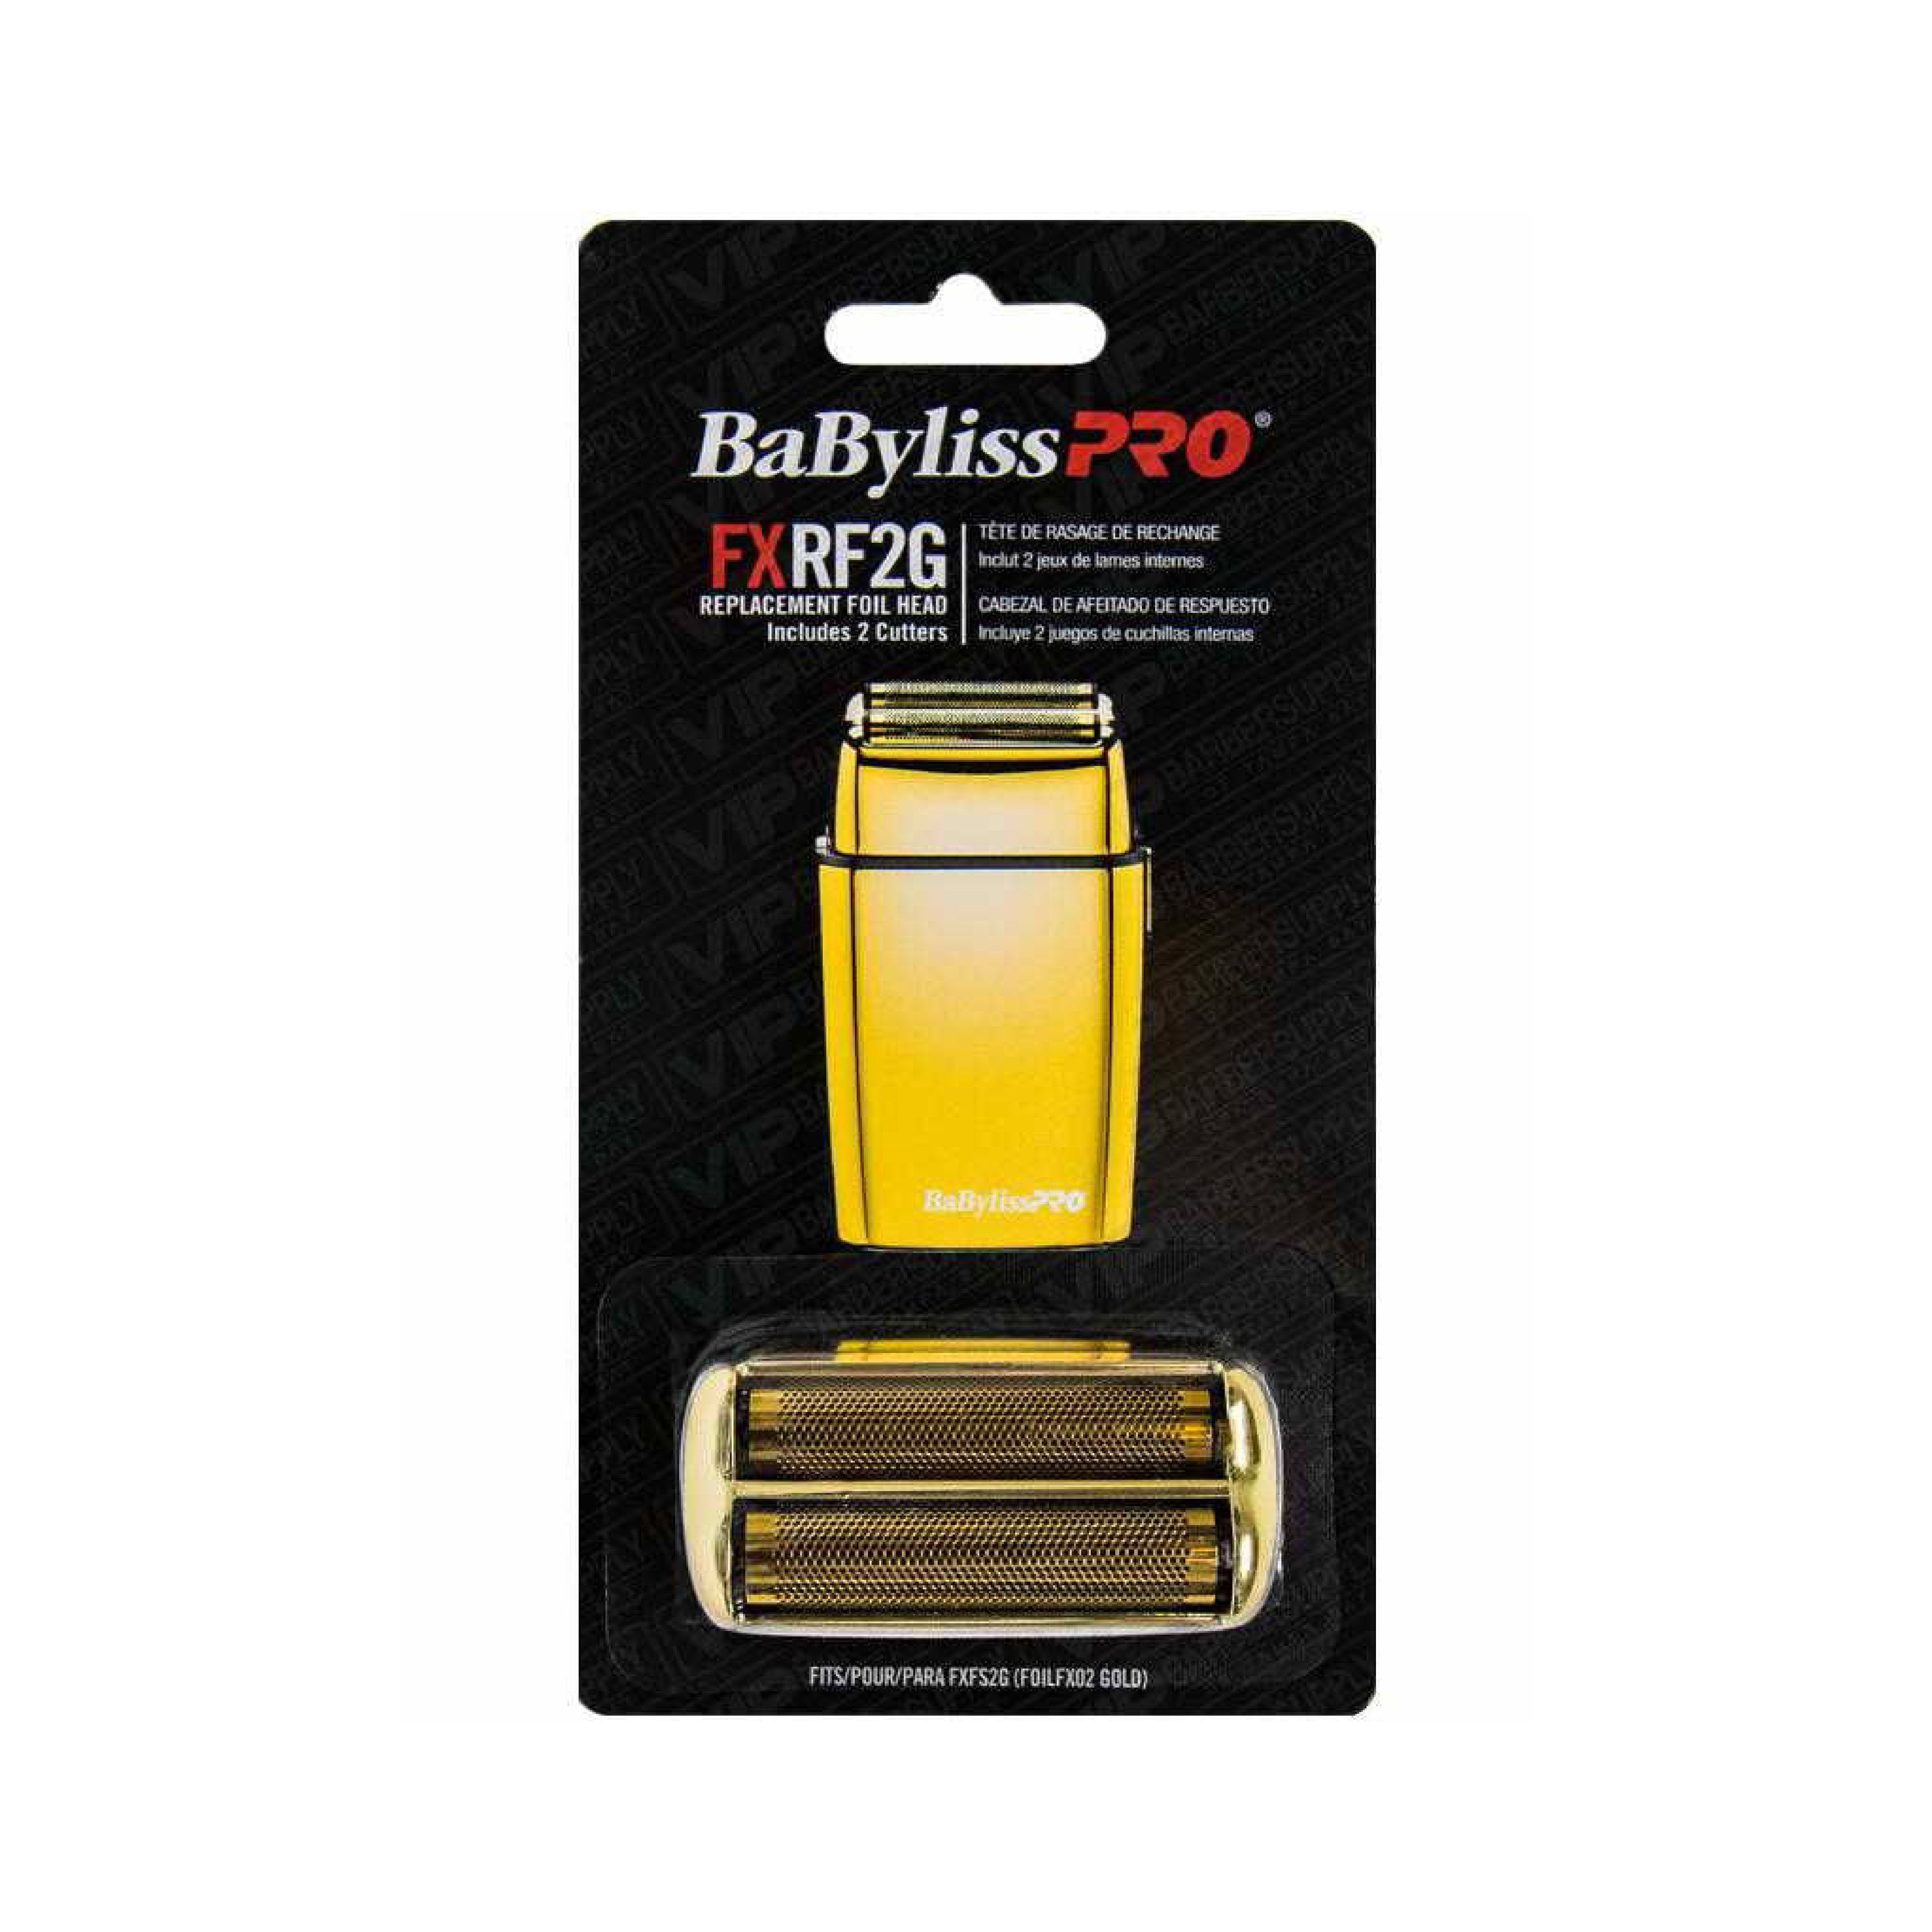 Babyliss Pro FXRF2G - Replacement Foil & Cutter for FoilFX02 - Barber Bazaar